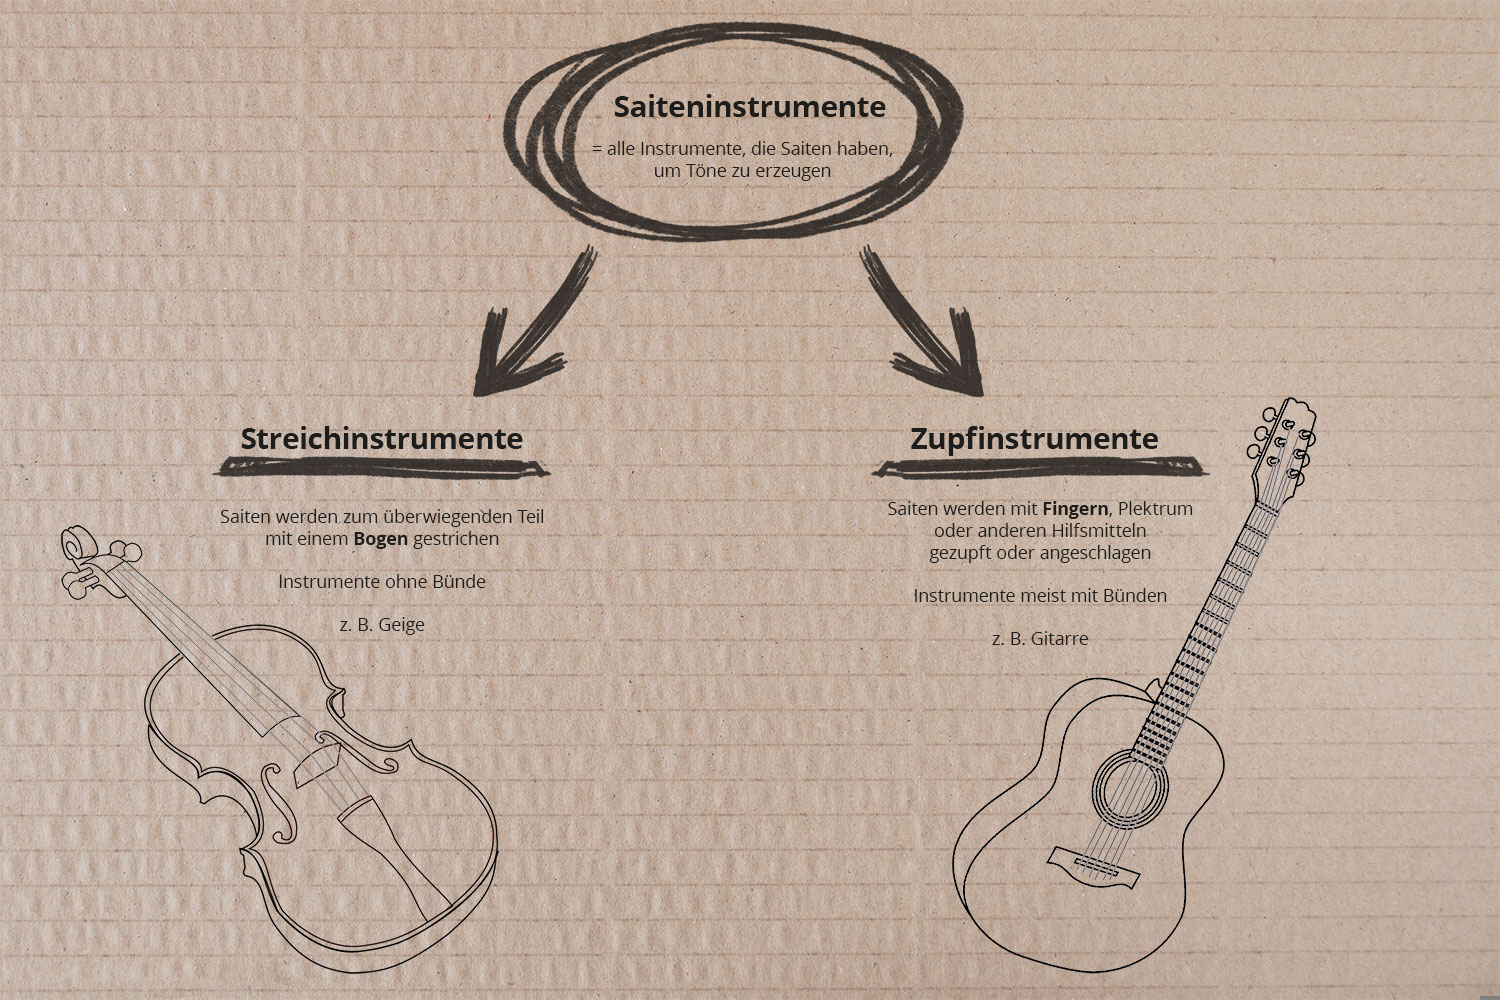 Unterteilung von Saiteninstrumenten in Streichinstrumente und Zupfinstrumente